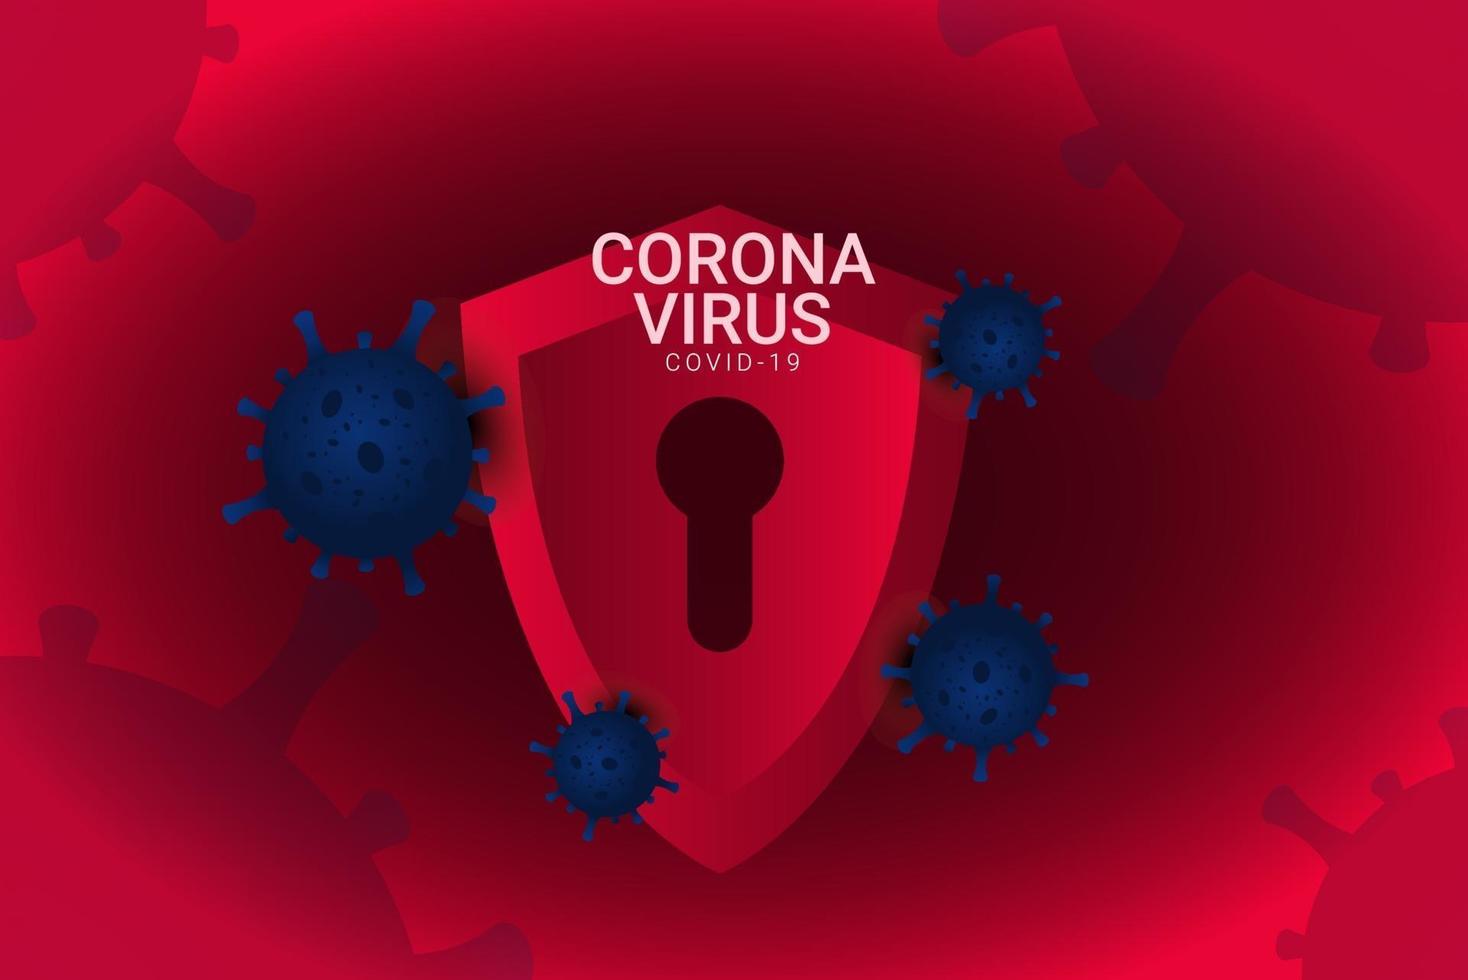 ilustração de design de modelo vetorial corona vírus covid-19 vetor